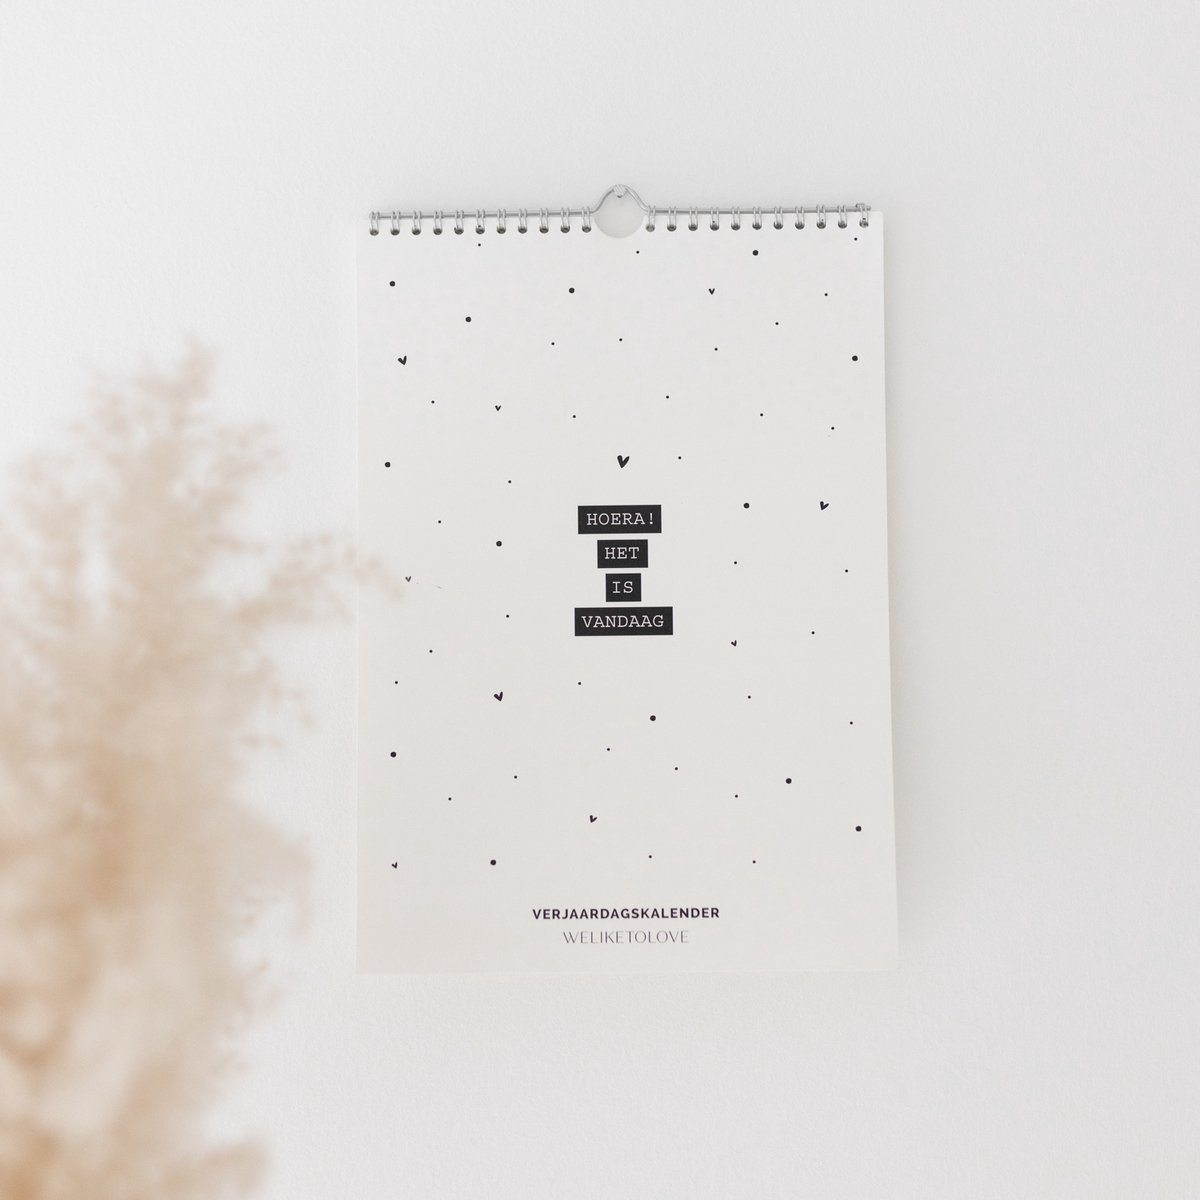 Hippe verjaardagskalender volwassenen - verjaardagskalender zwart wit - verjaardagskalenders - kalender - wandkalender - wandkalenders - omlegkalender - maandkalender - A4